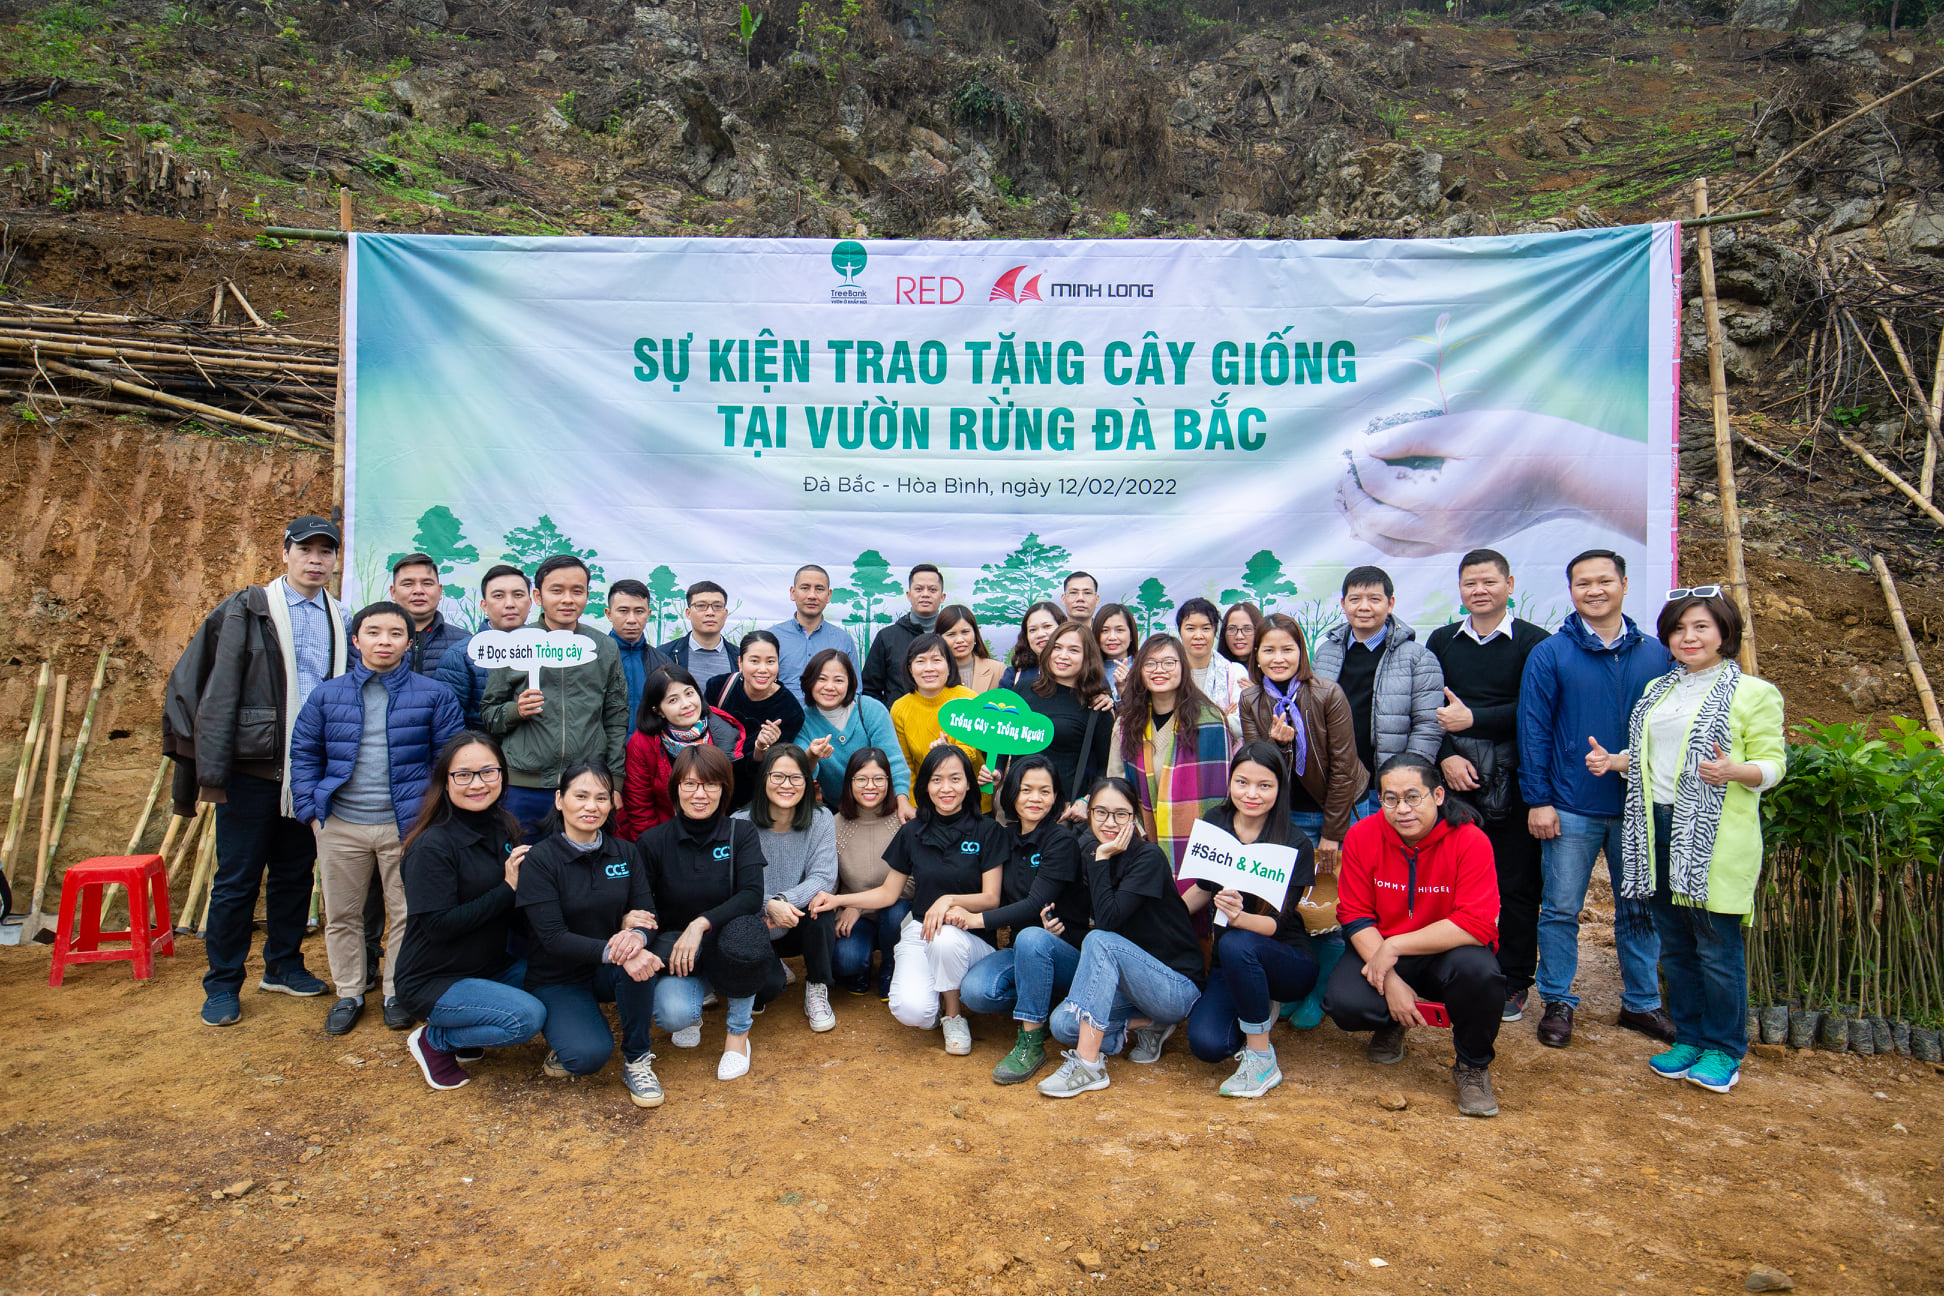 Album Sự kiện trao tặng cây giống tại vườn rừng Đà Bắc